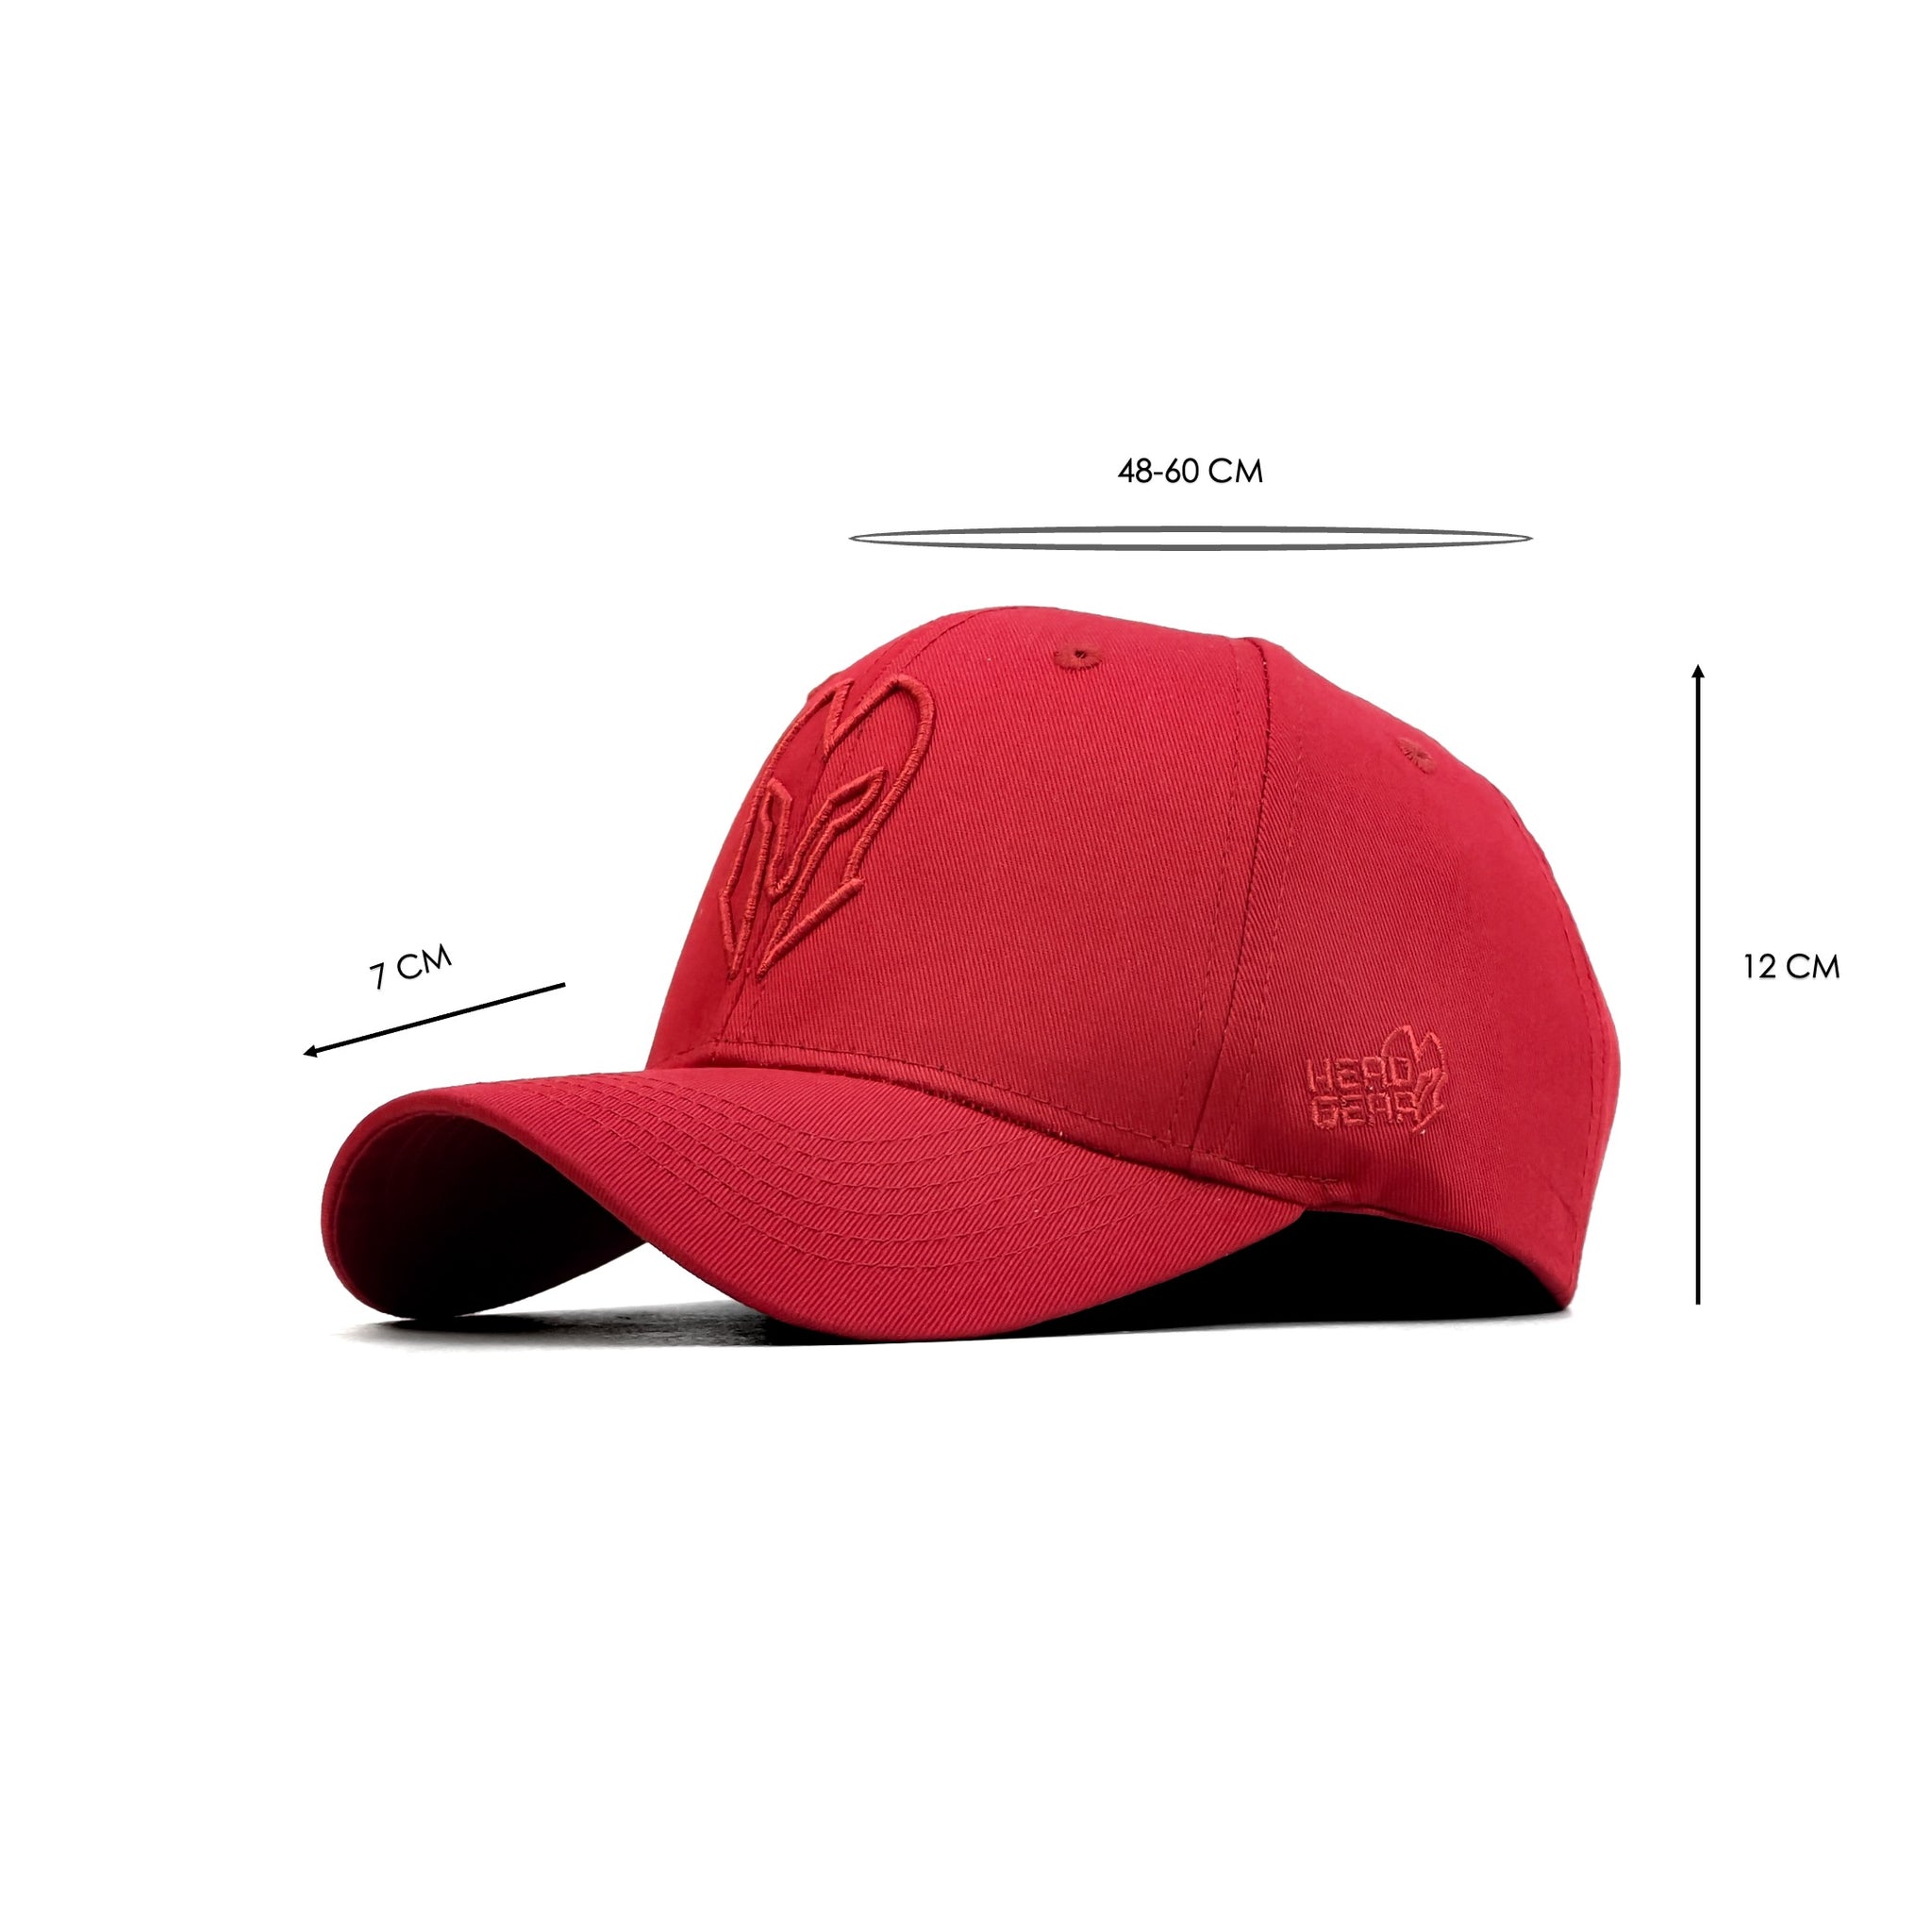 HEAD GEAR SUPER TWILL RED CAP